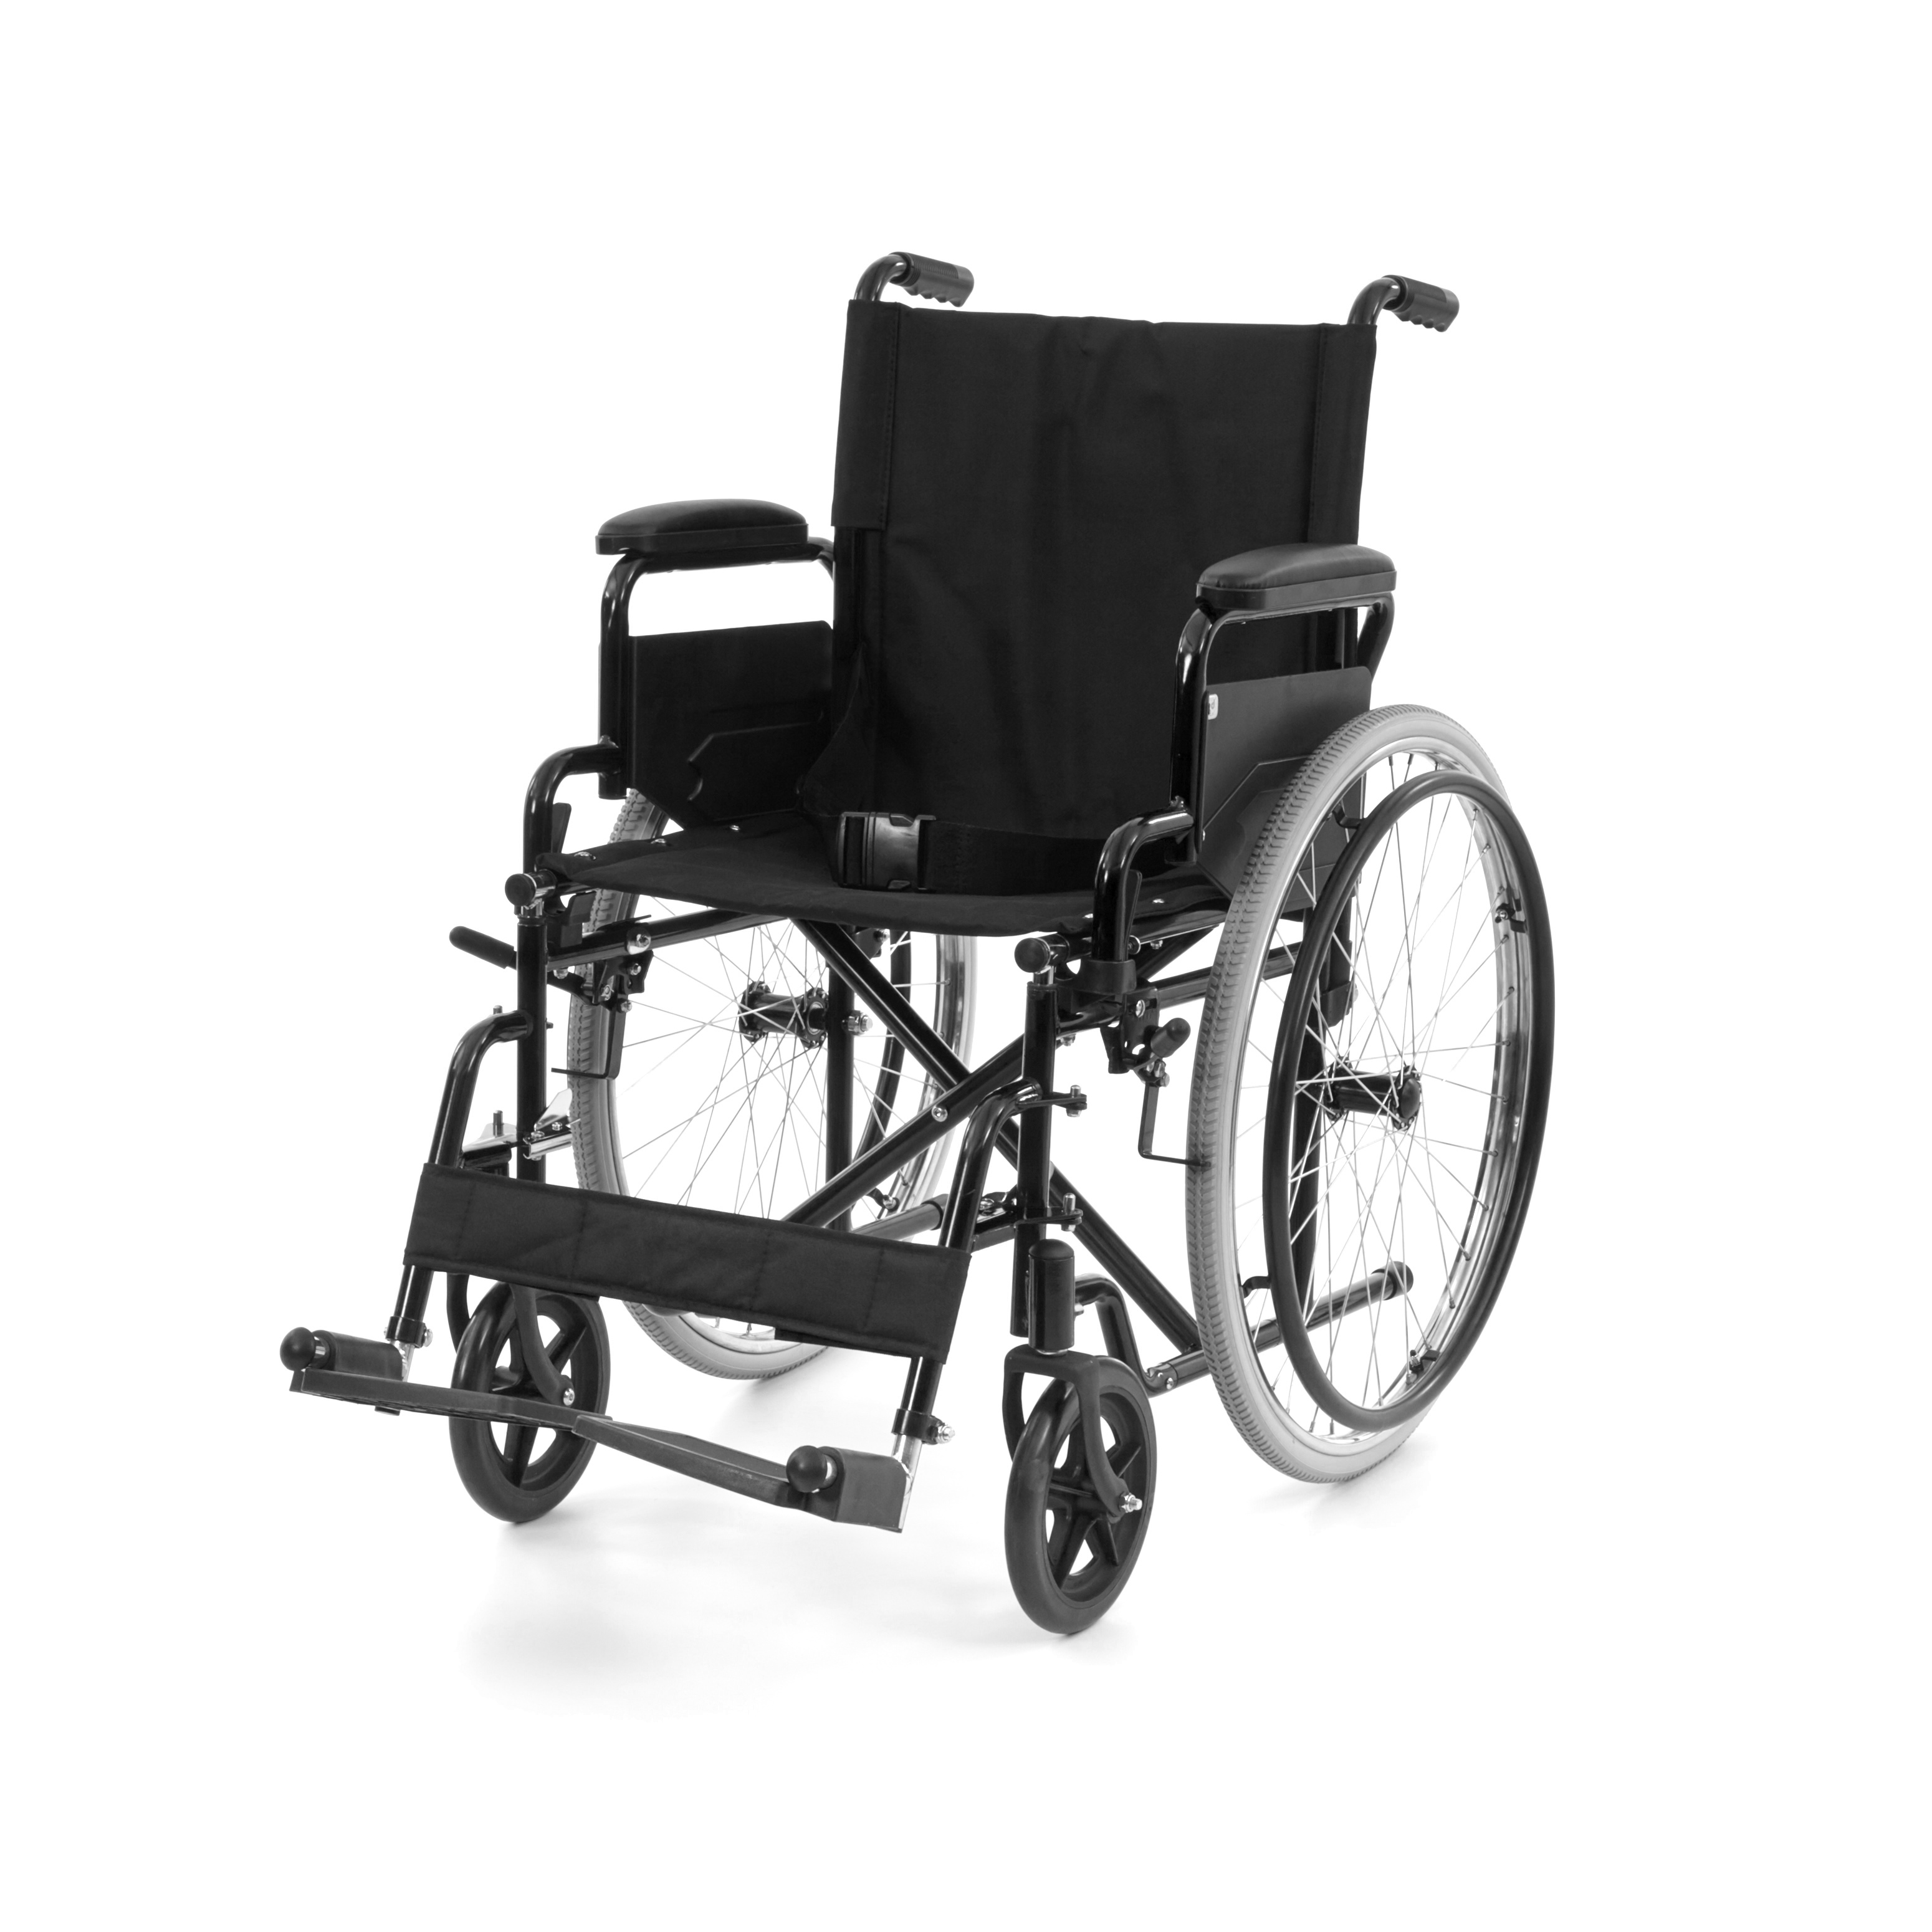 WHE-01-BLACK Romed faltbarer Standard-Rollstuhl mit klappbare Armlehne und Fußrasten.